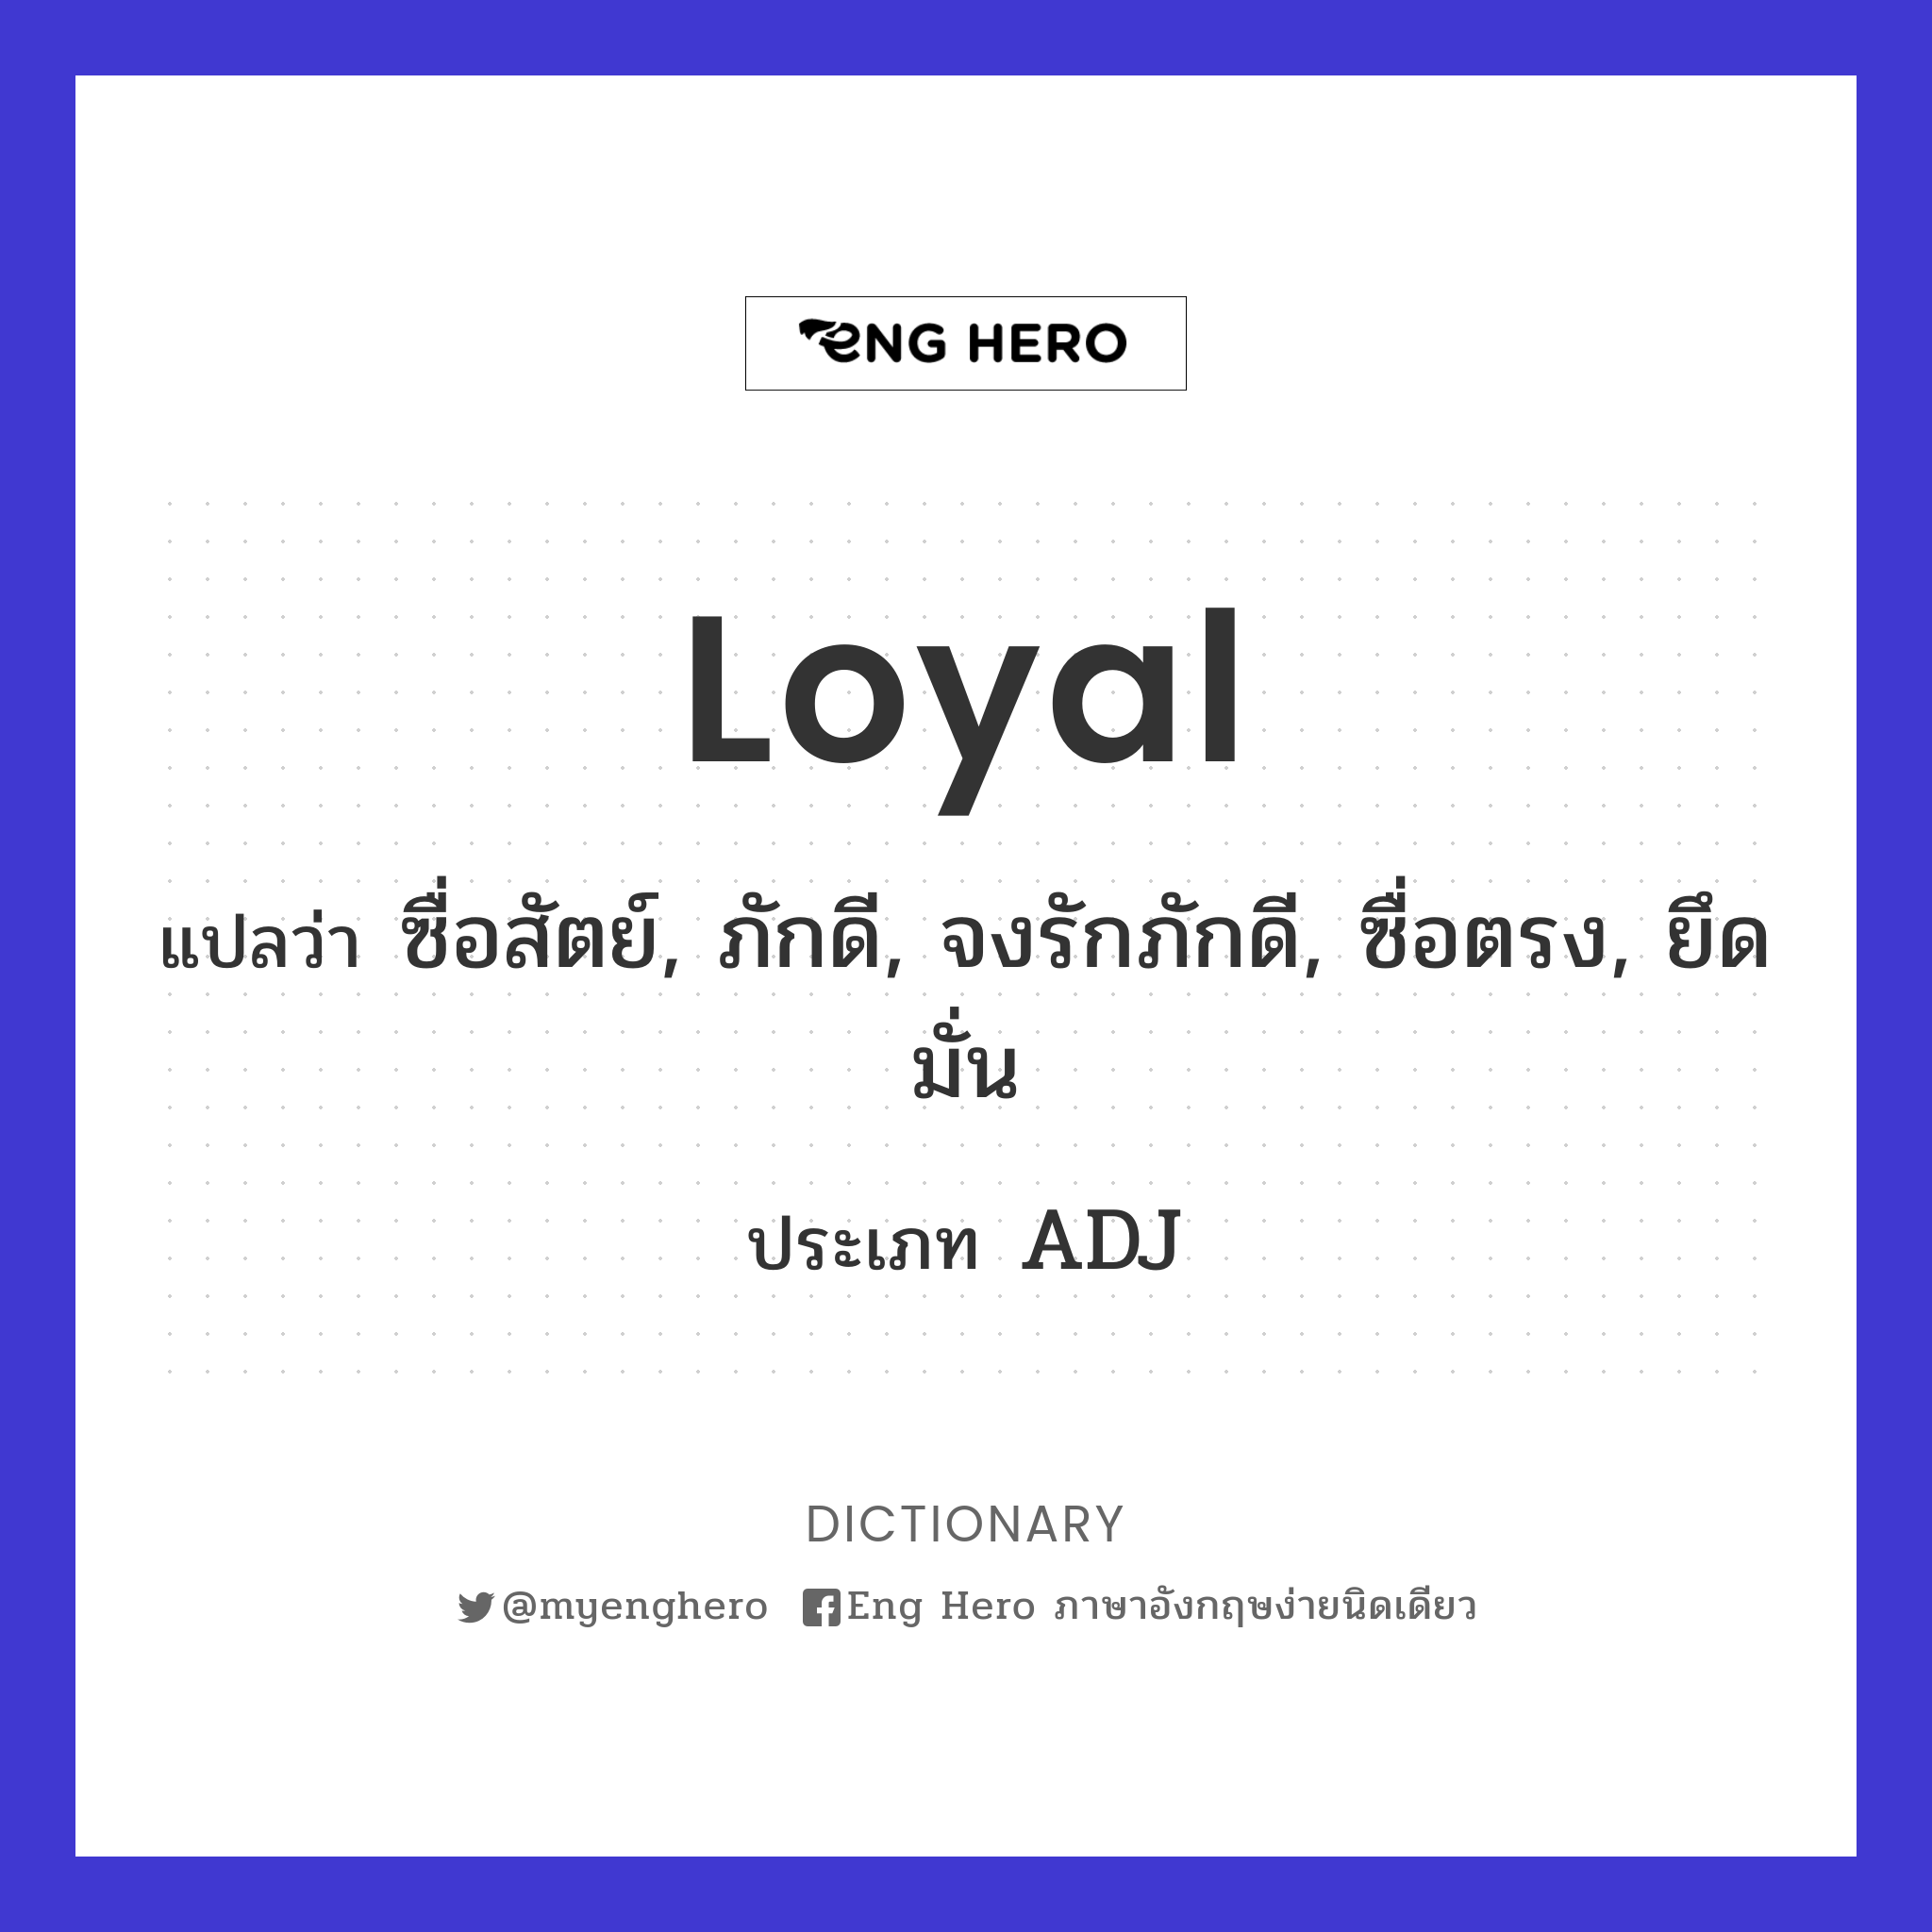 loyal